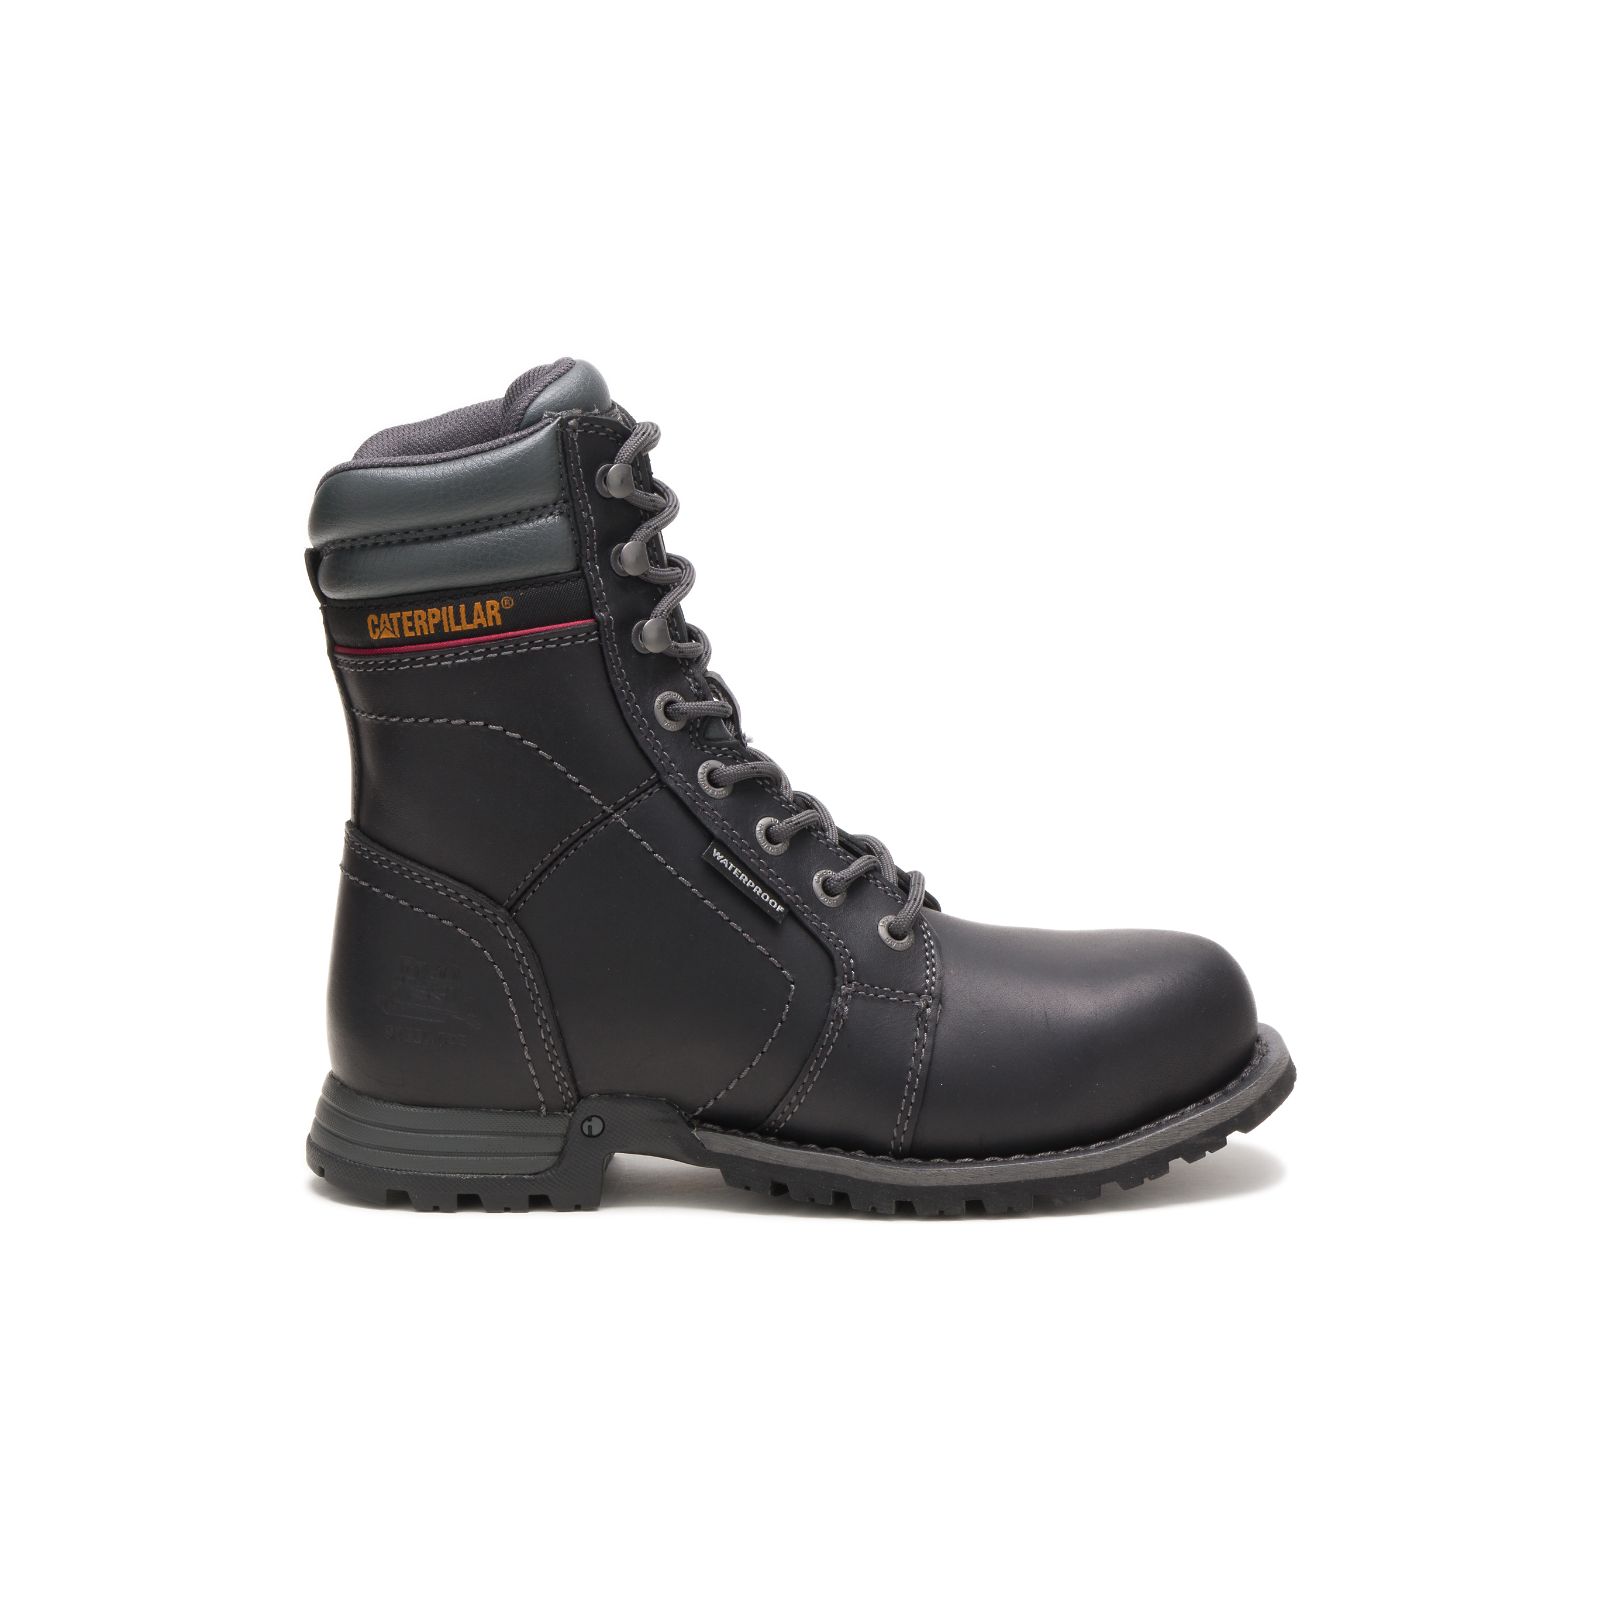 Caterpillar Steel Toe Boots UAE Online - Caterpillar Echo Waterproof Steel Toe Womens - Black AKULQF481